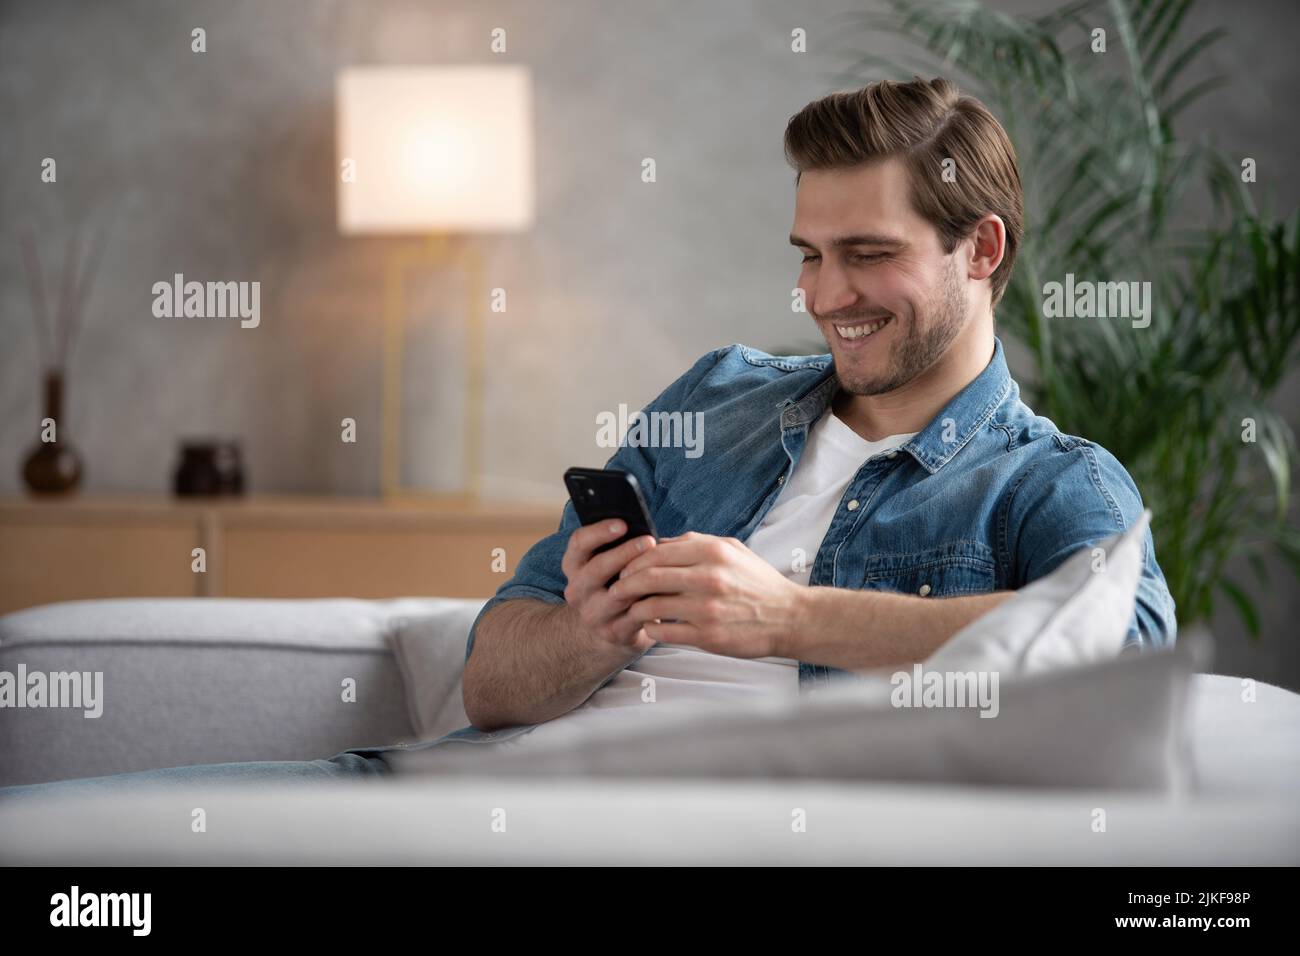 Attraktiver, lächelnder junger Mann in legerer Kleidung, der auf einer Couch im Wohnzimmer sitzt und ein Mobiltelefon benutzt Stockfoto